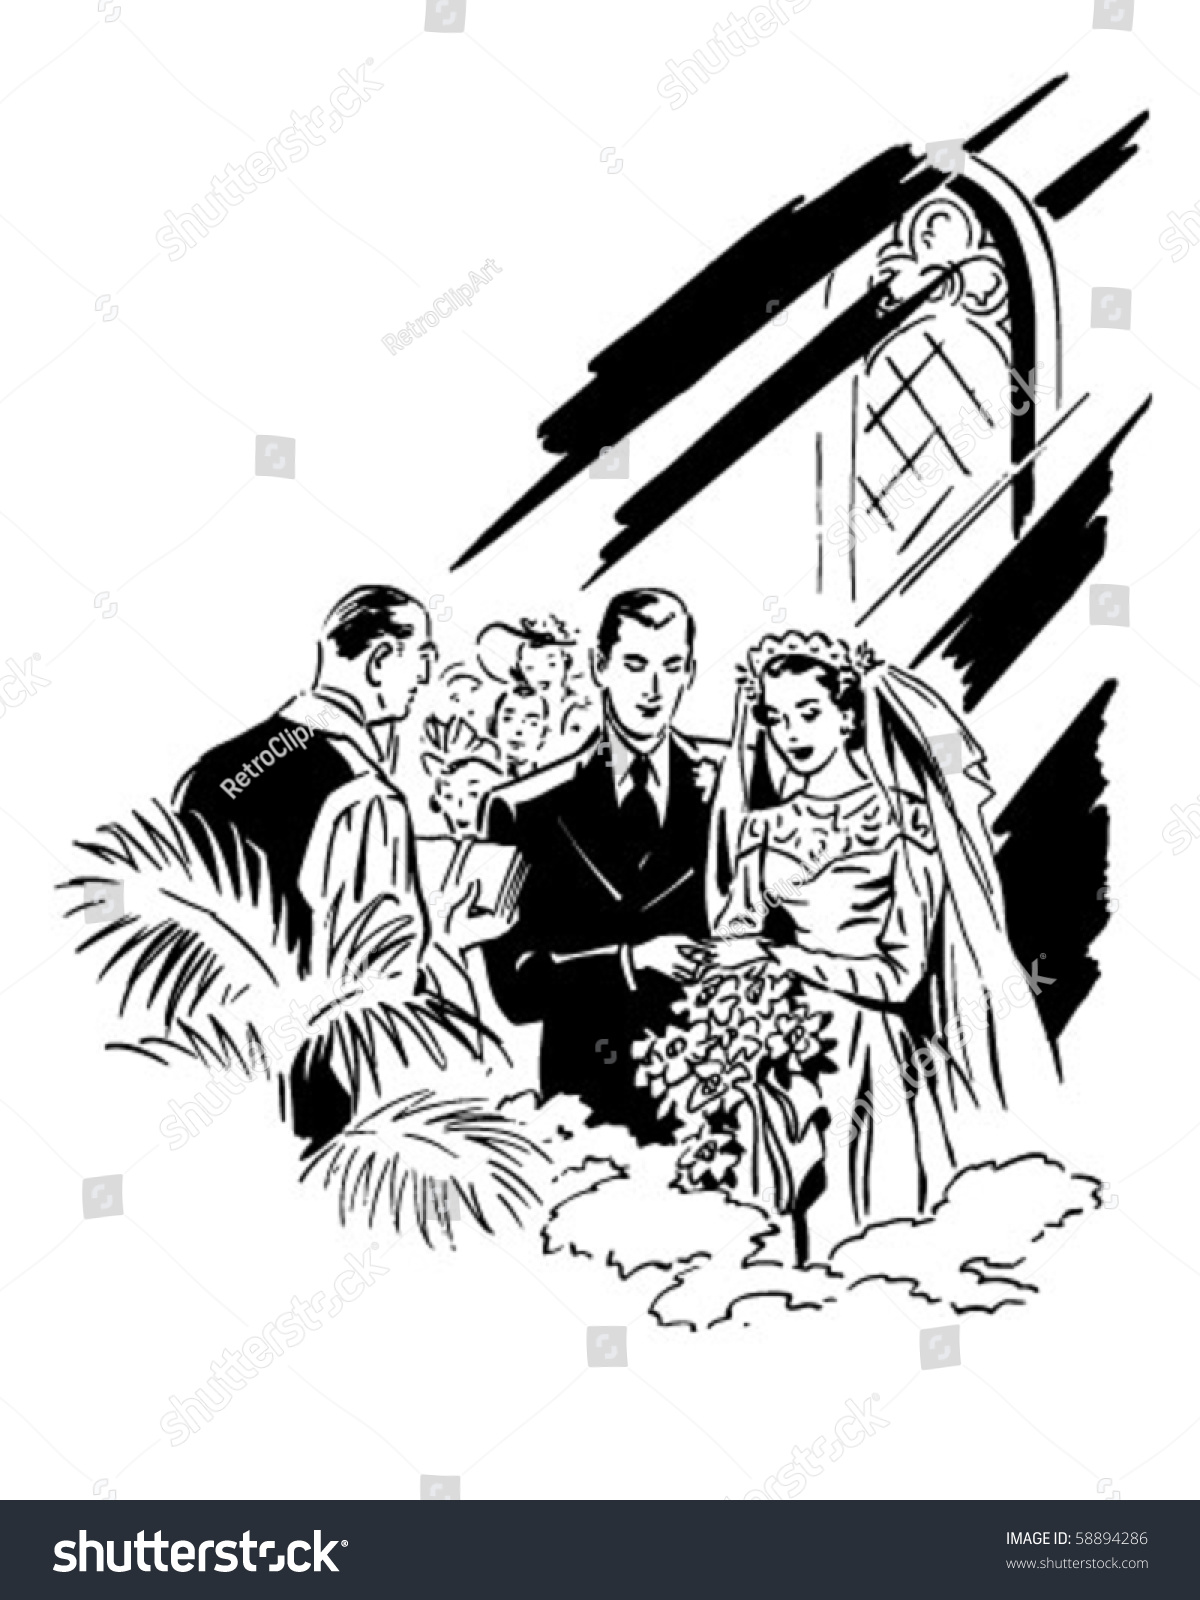 Download Wedding Ceremony Retro Clip Art Stock Vector 58894286 ...